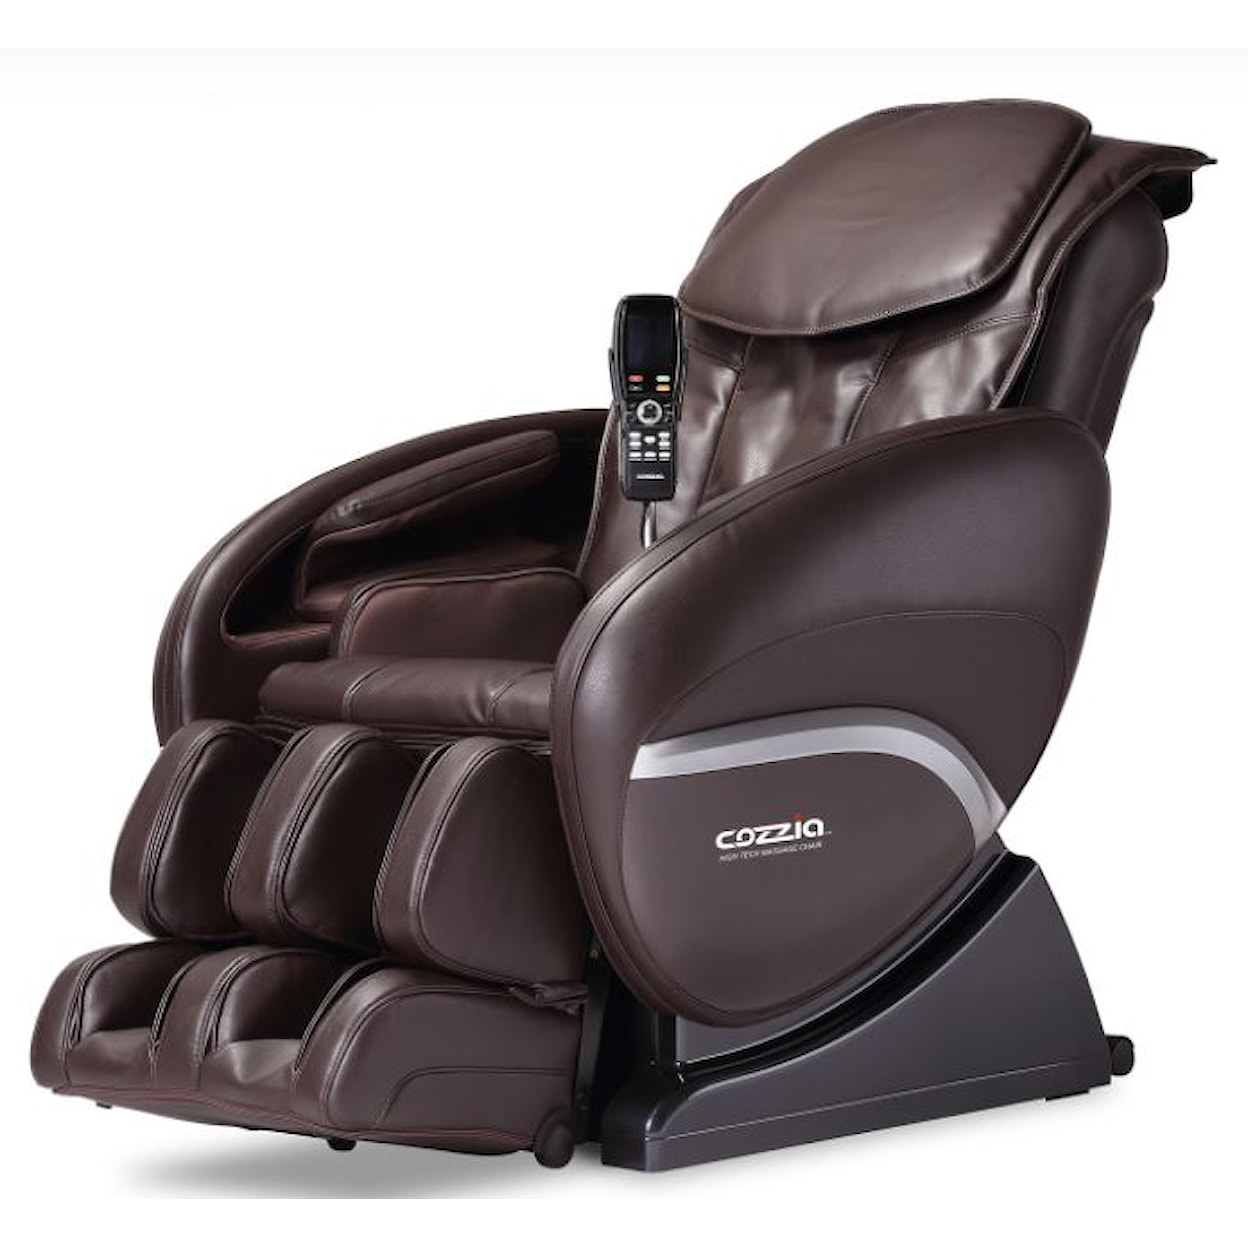 Cozzia CZ-388 Massage Chair